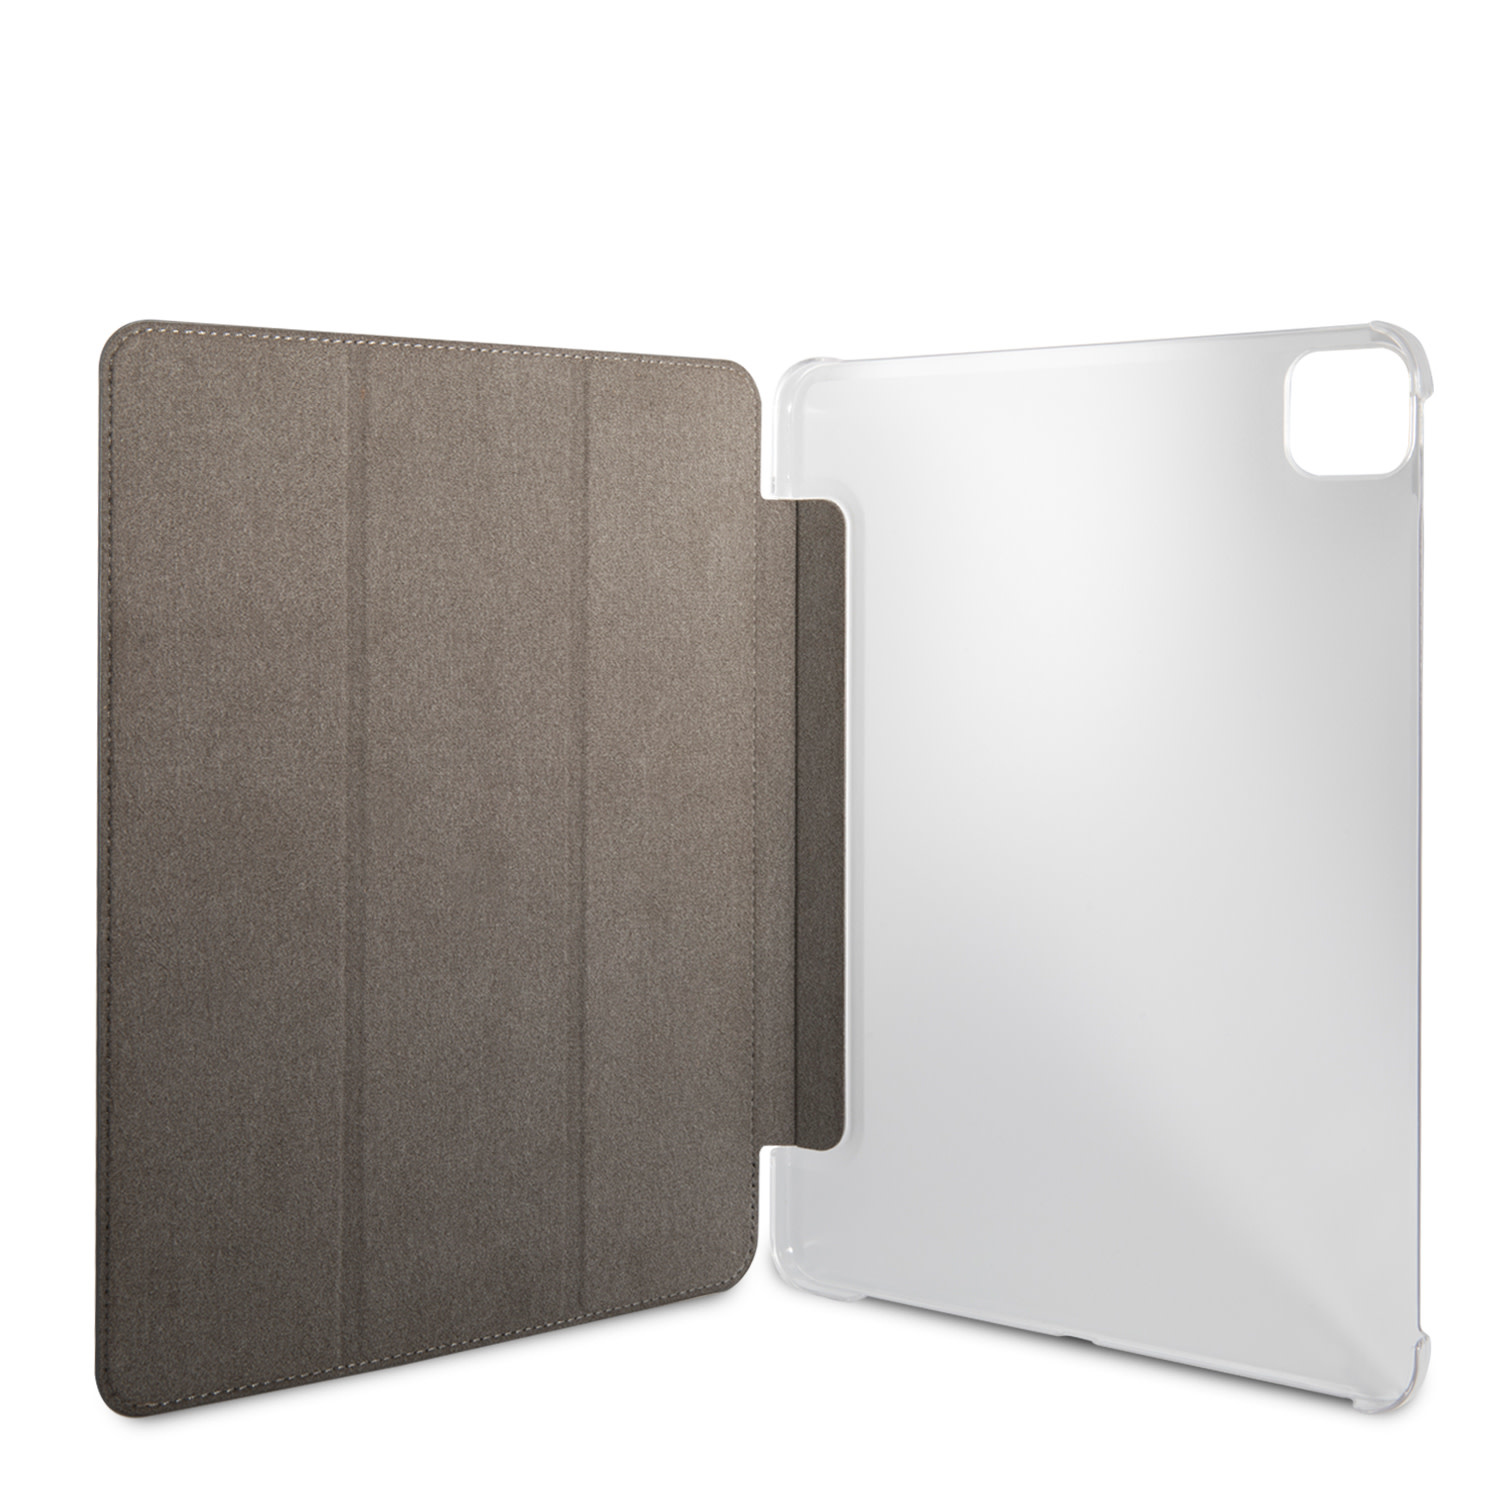 Guess Folio iPad Pro 11 colos (2021) könyvtok - Fe